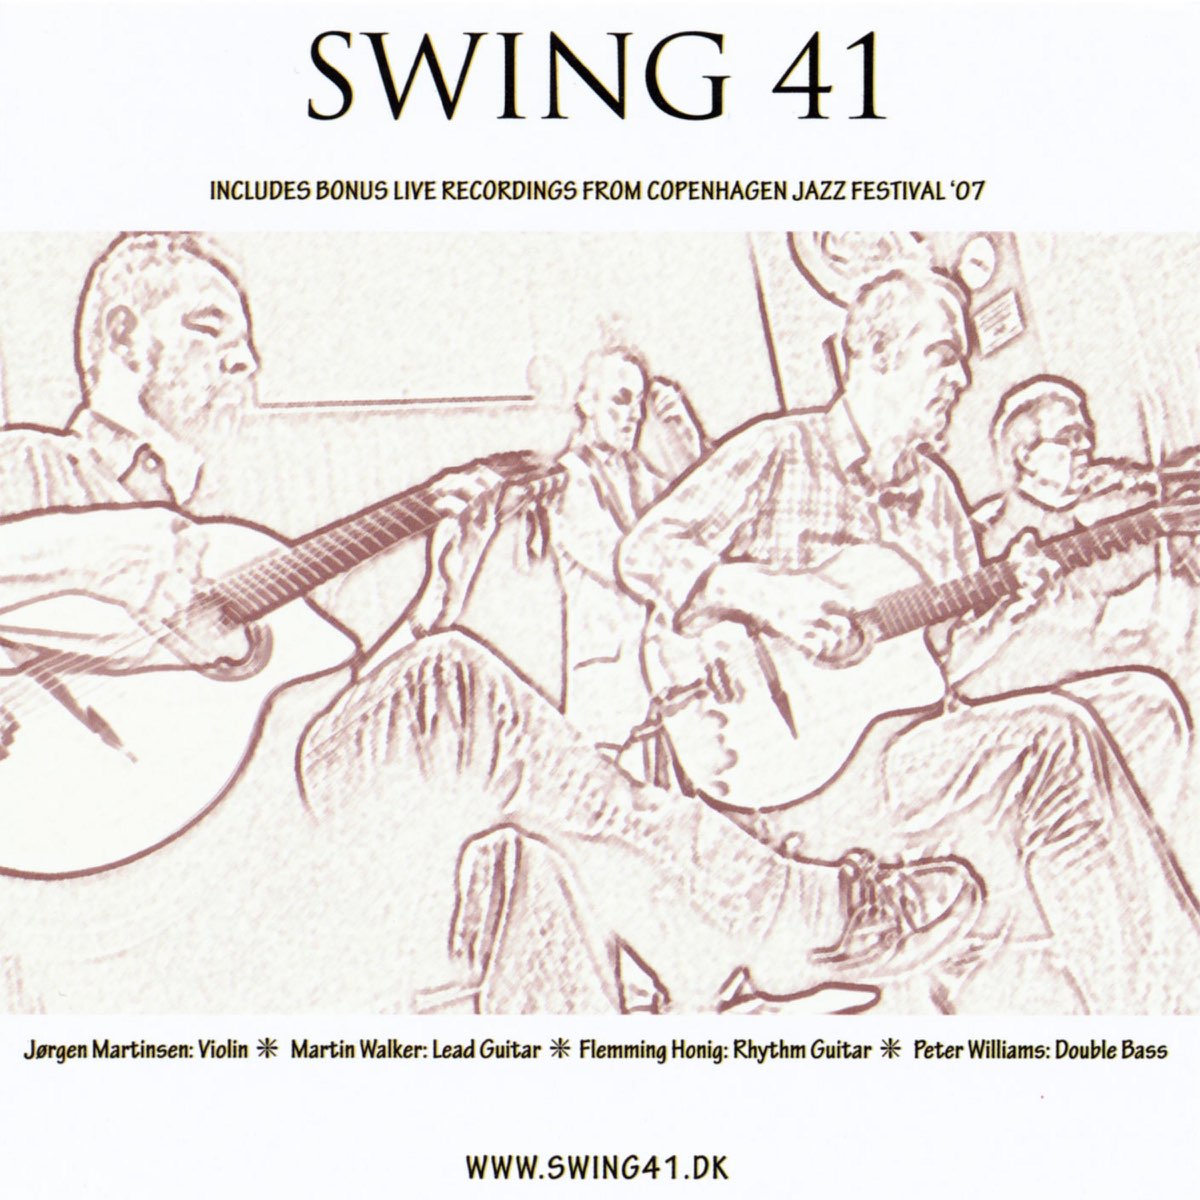 Swing 41 by Swing 41 on Apple Music